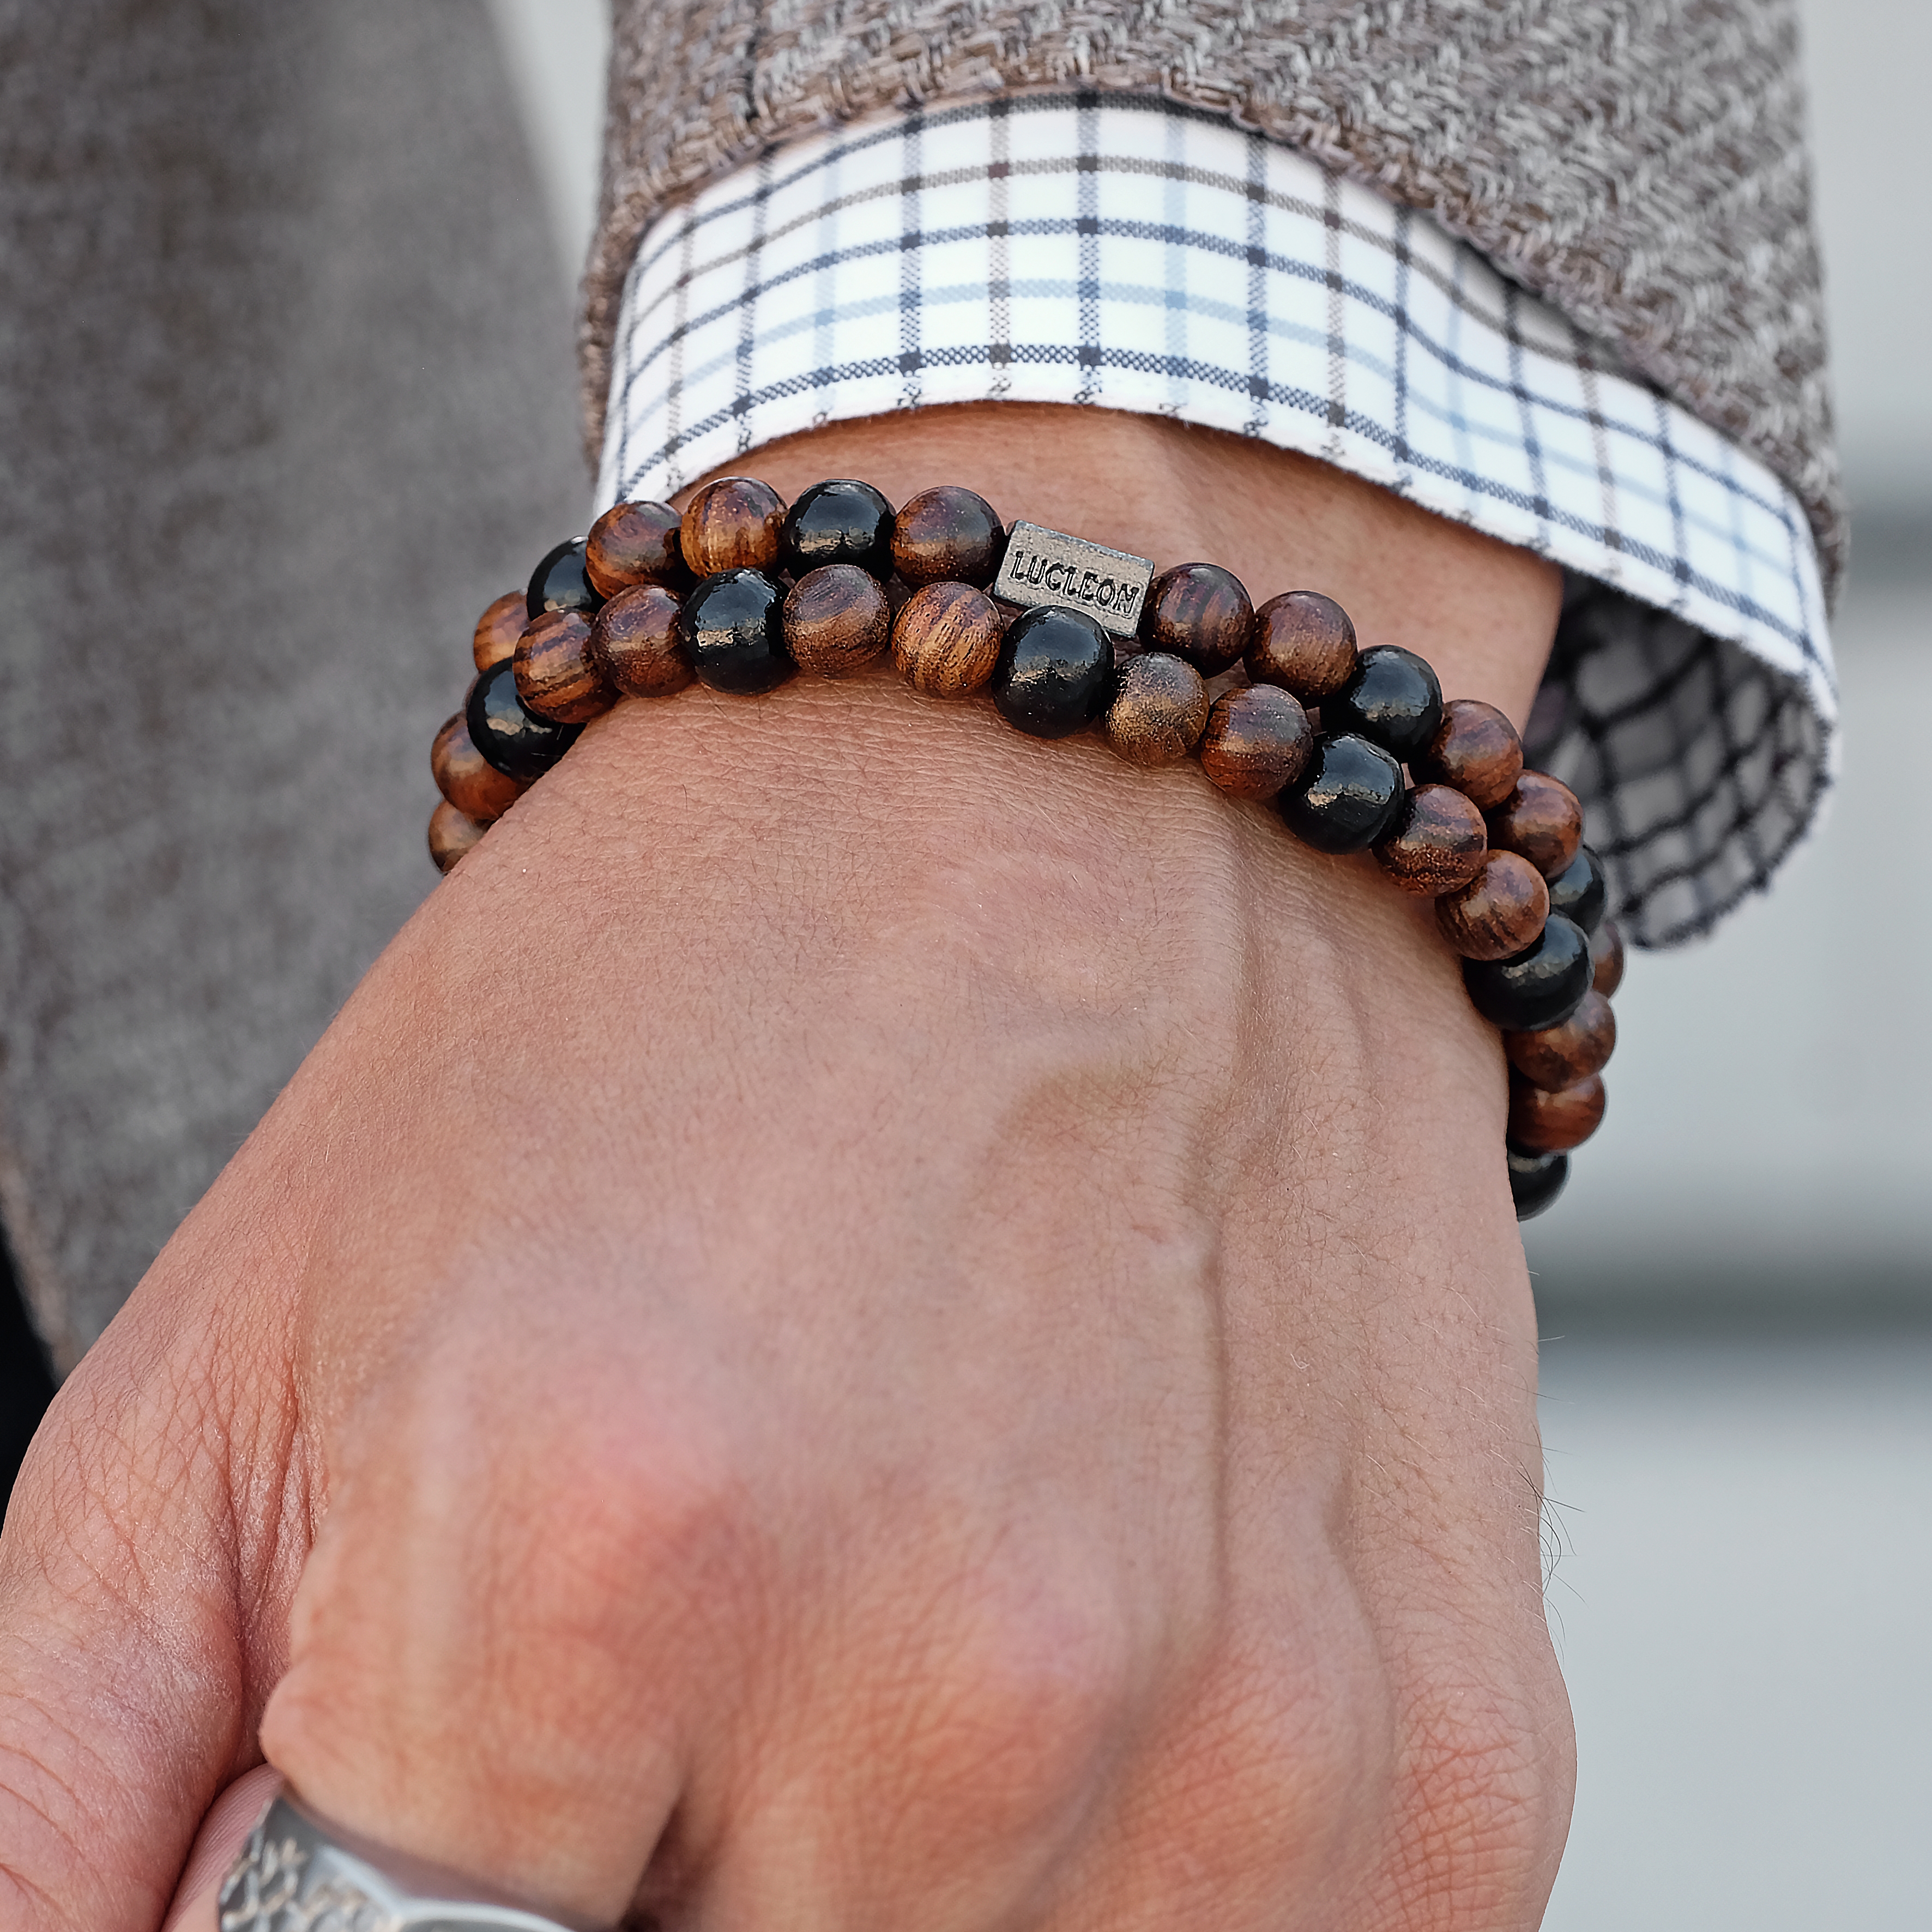 Le bracelet Maneki Neko : Un porte-bonheur à votre poignet ! – Tako du Japon